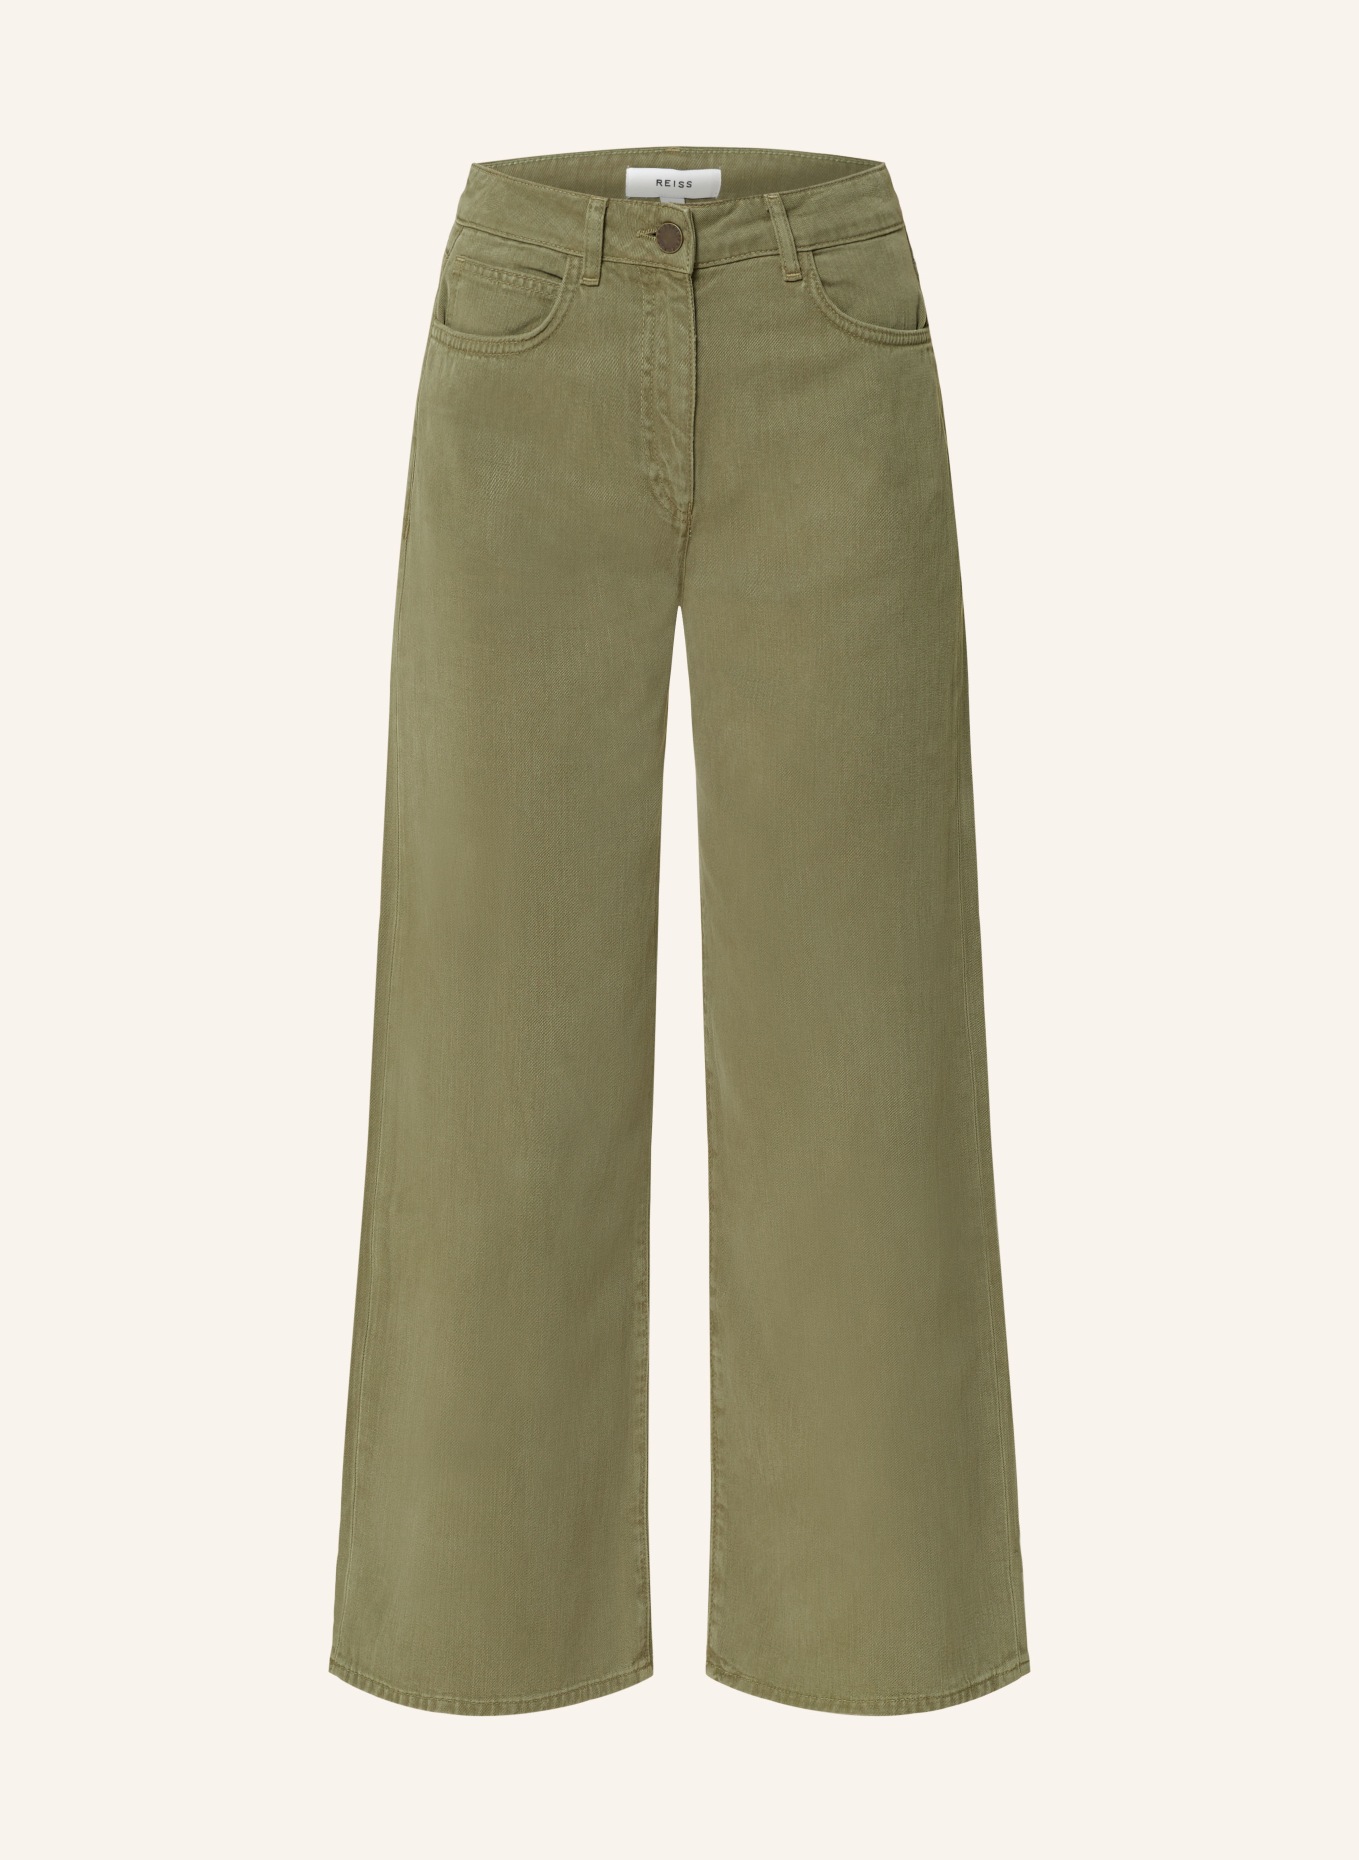 REISS Flared Jeans COLORADO, Farbe: 51 KHAKI (Bild 1)